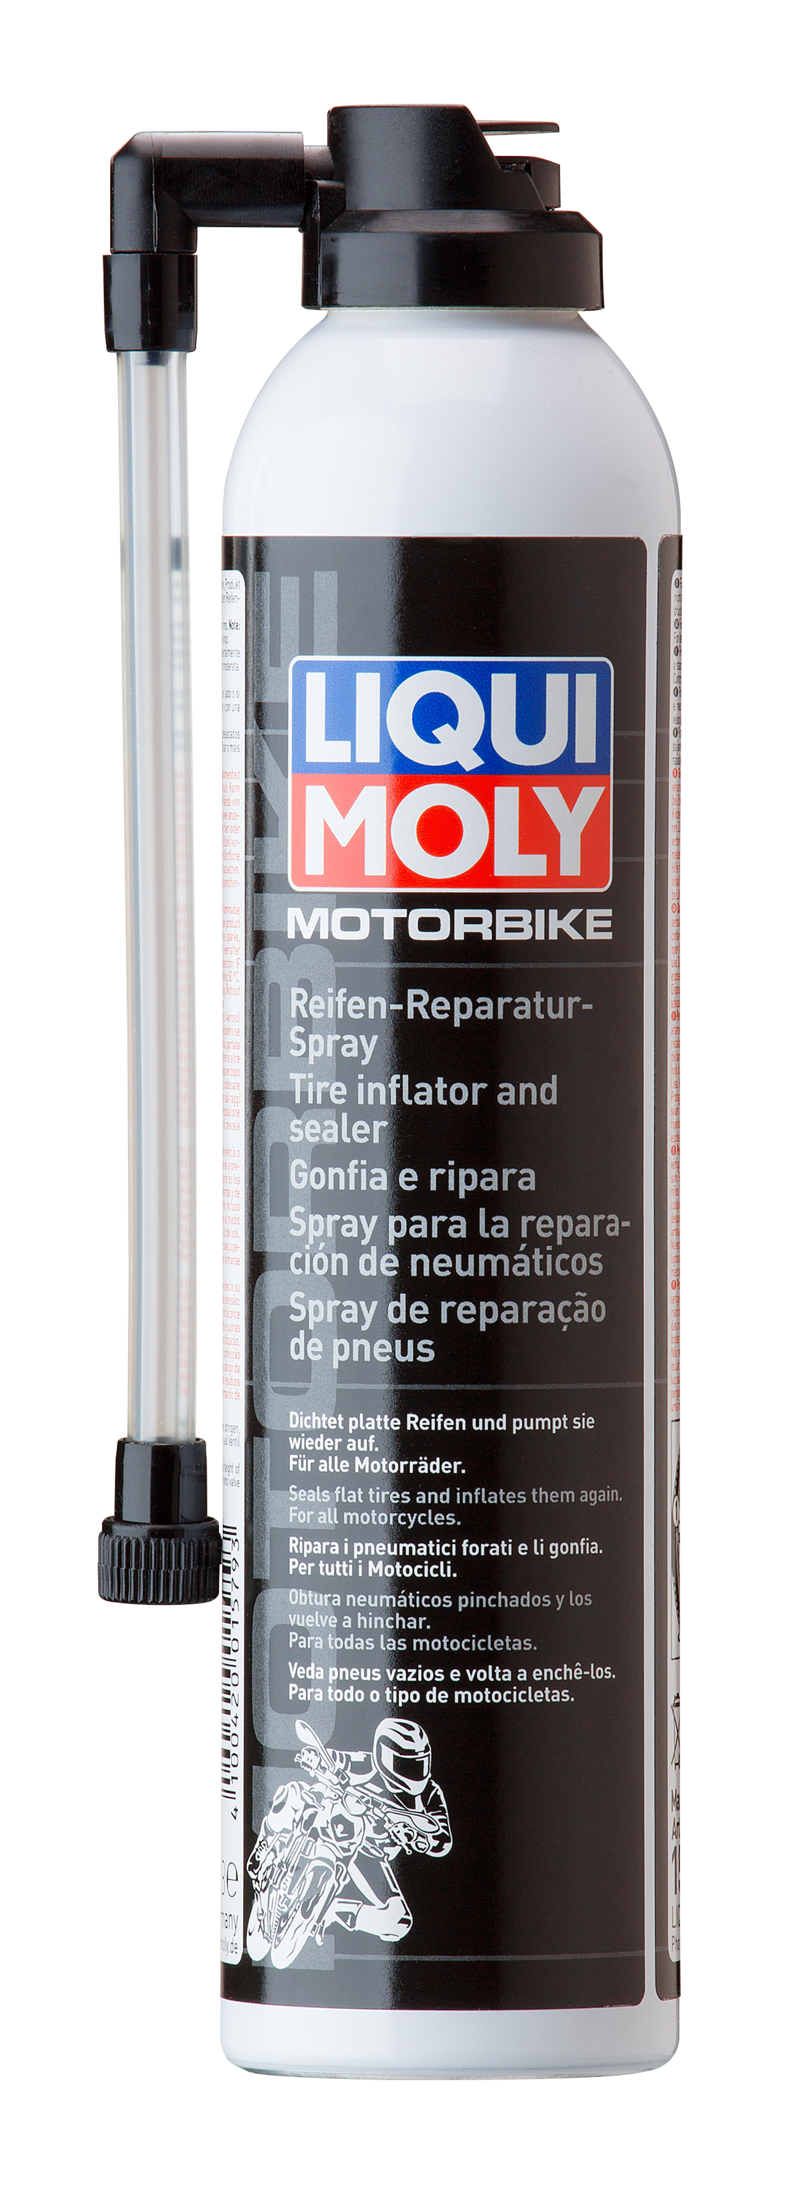 Motorbike Spray para la reparación de neumaticos (300 ML) Liqui Moly